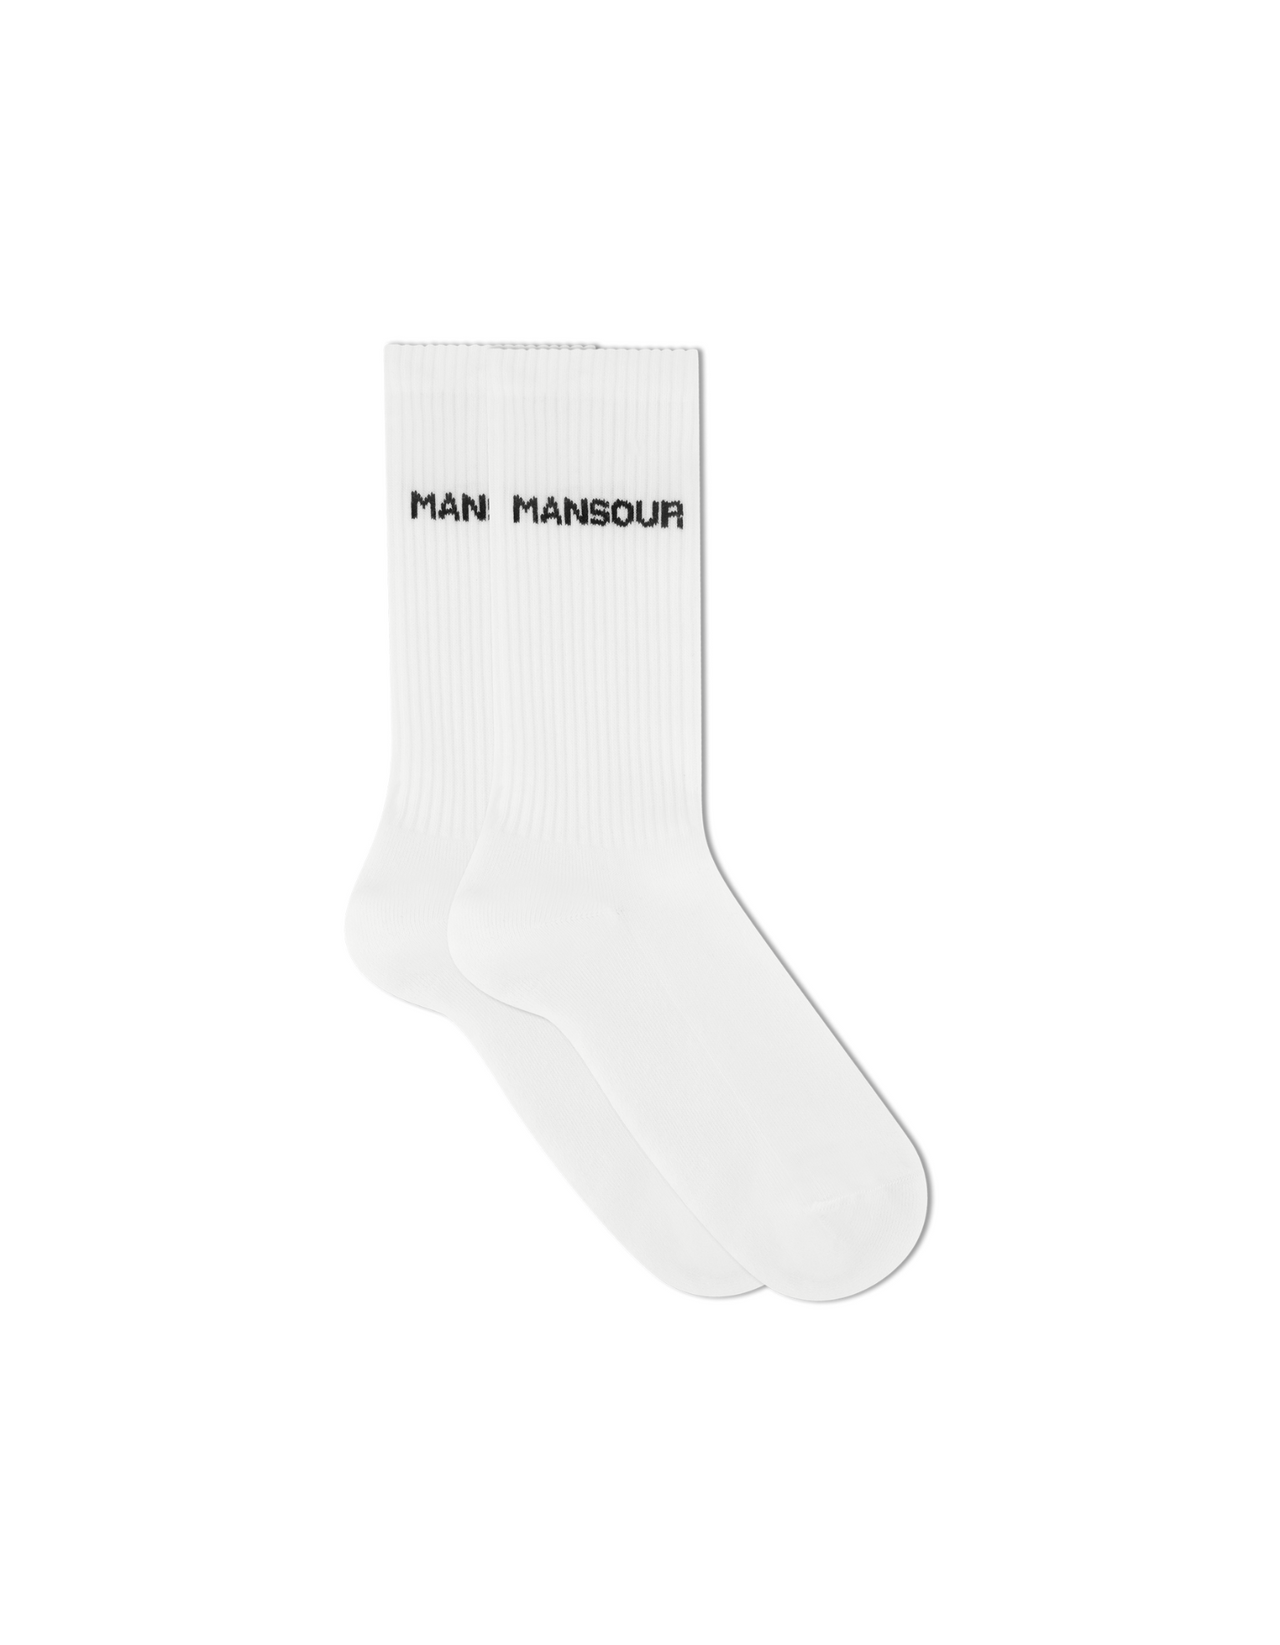 Monogram mid calf socks white